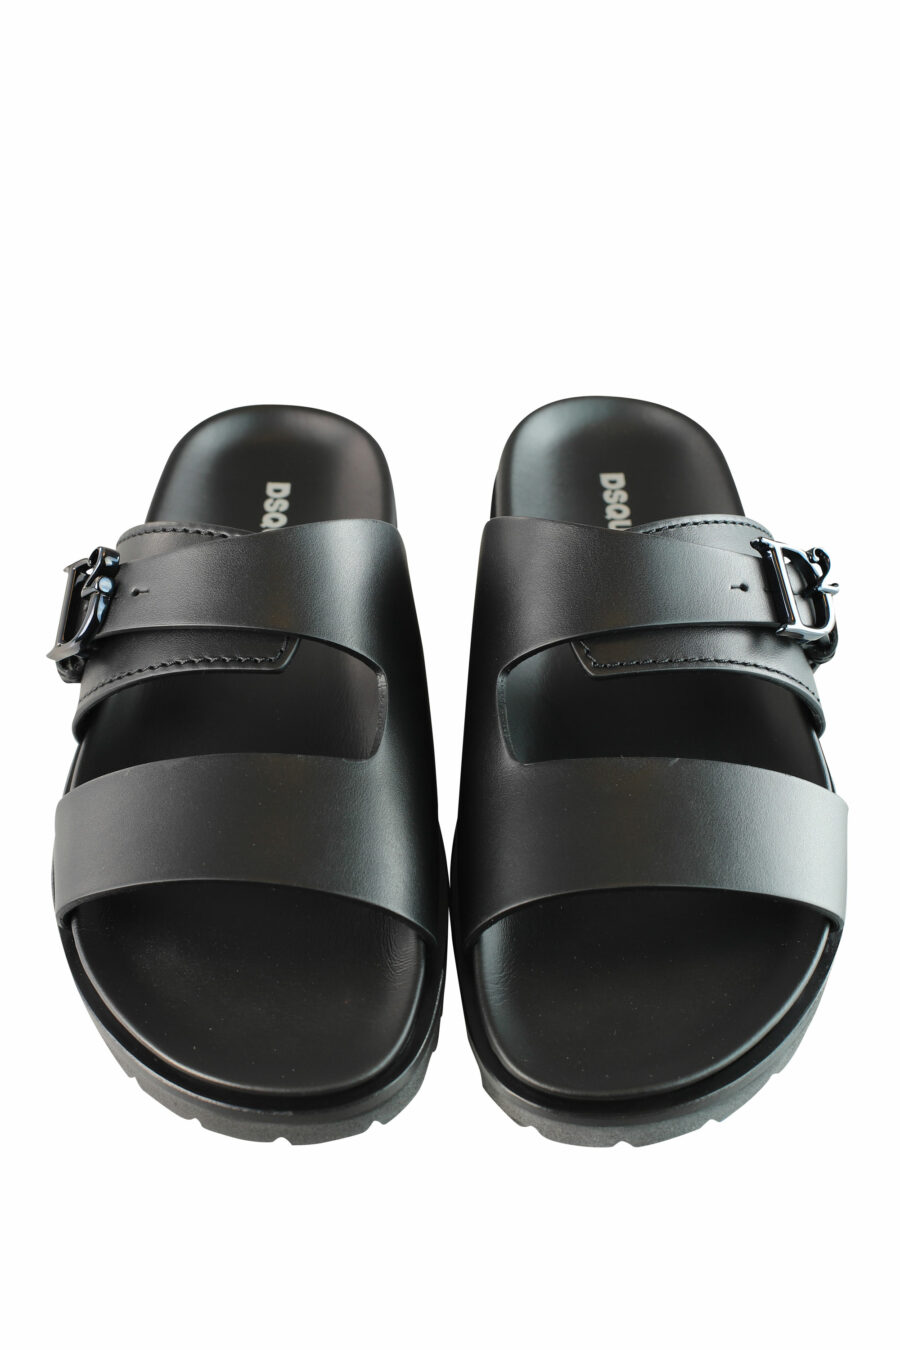 Schwarze Sandalen mit einfarbigem Metall-Logo "D2" - IMG 1290